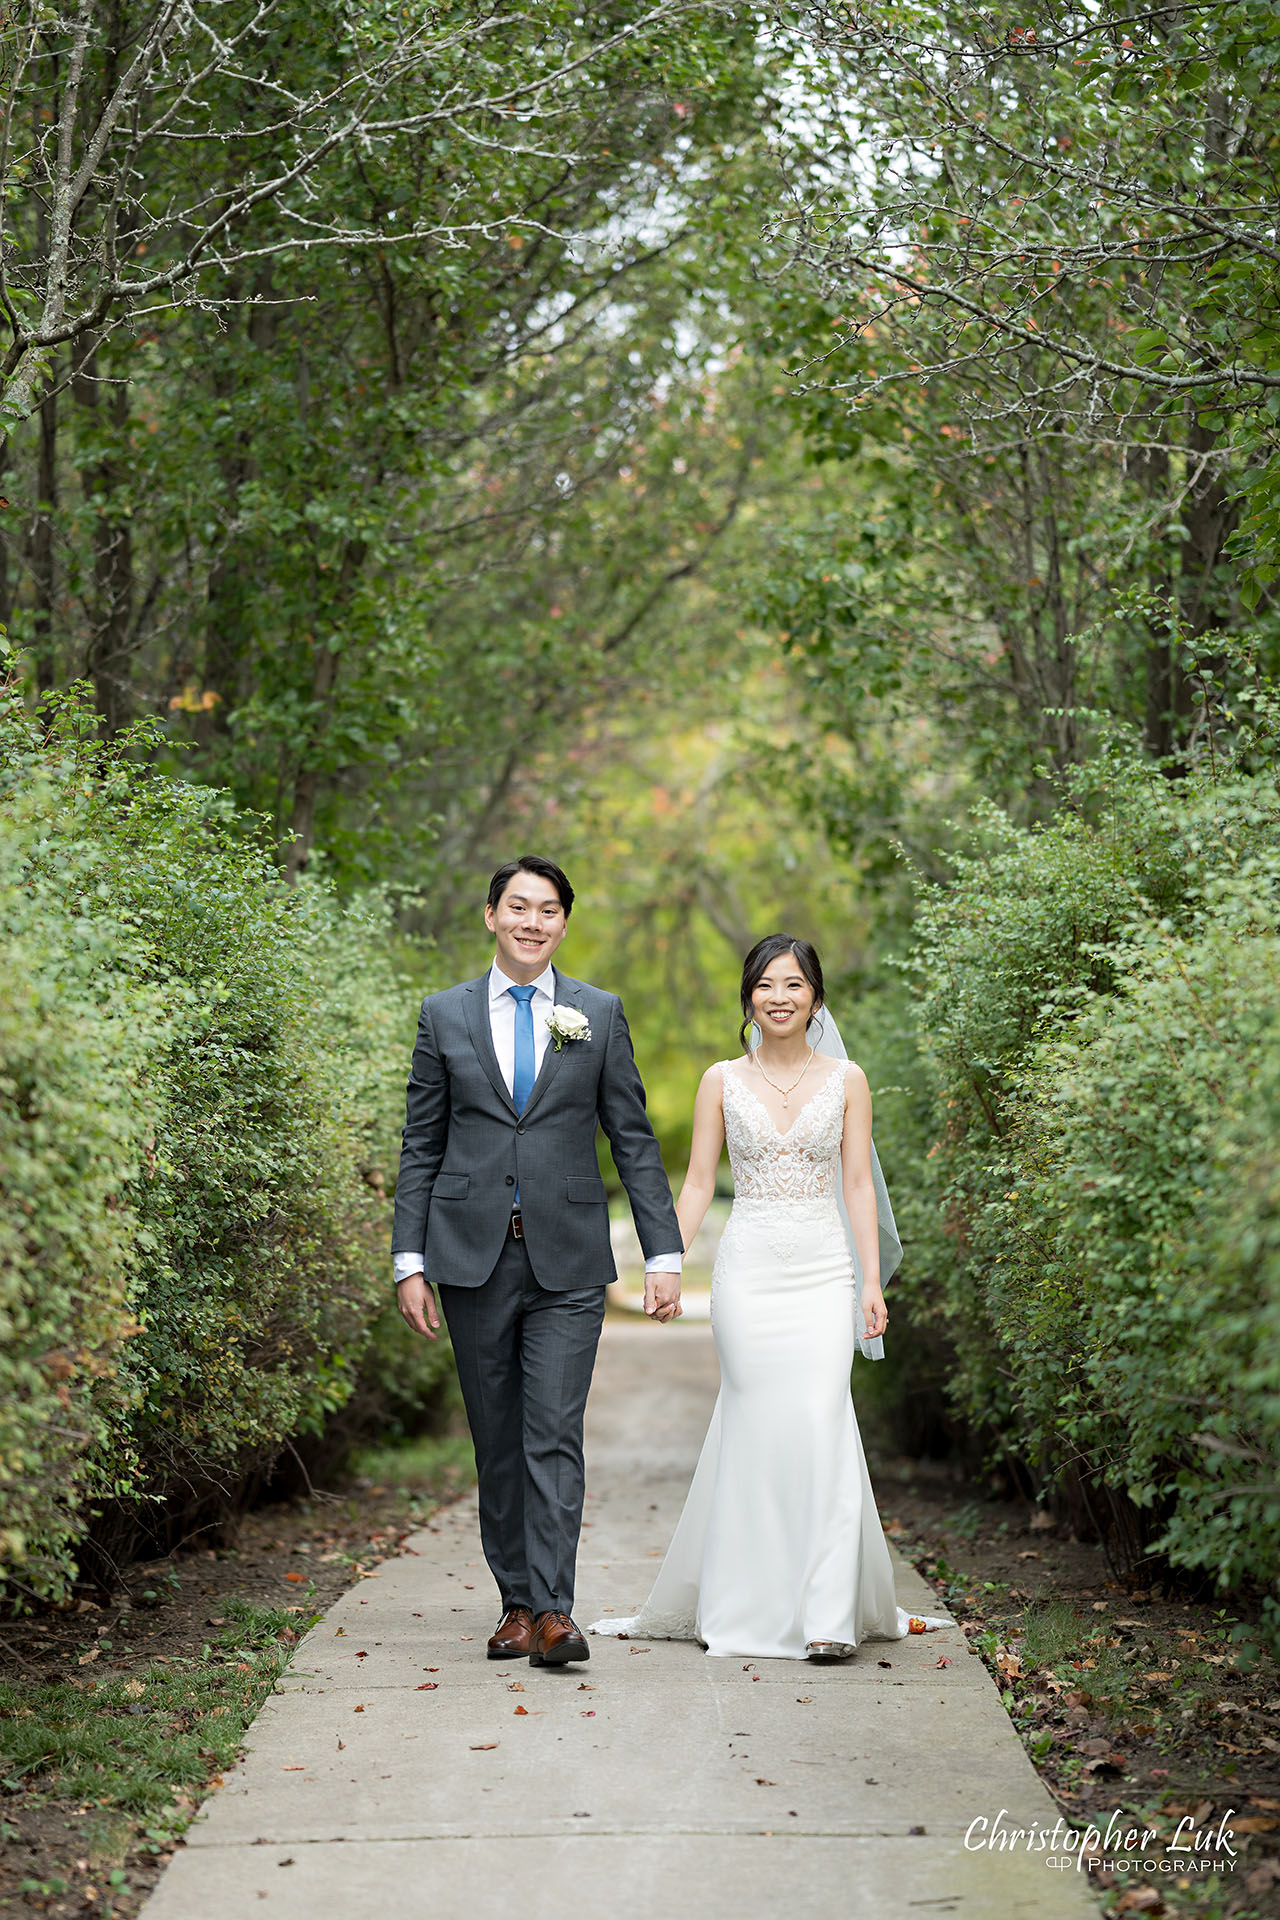 Bride Groom Holding Hands Walking Together Smiling Portrait 